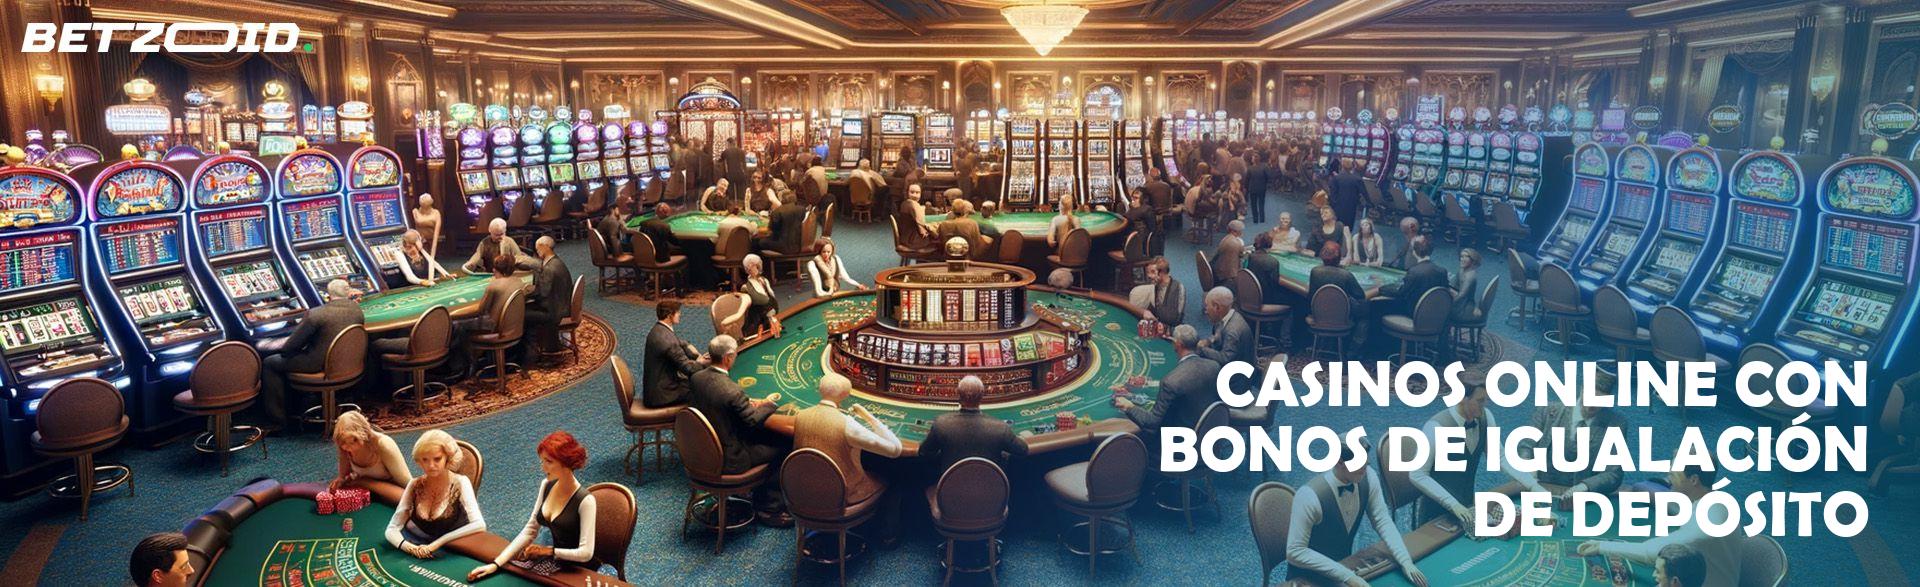 Bonos de igualación casino